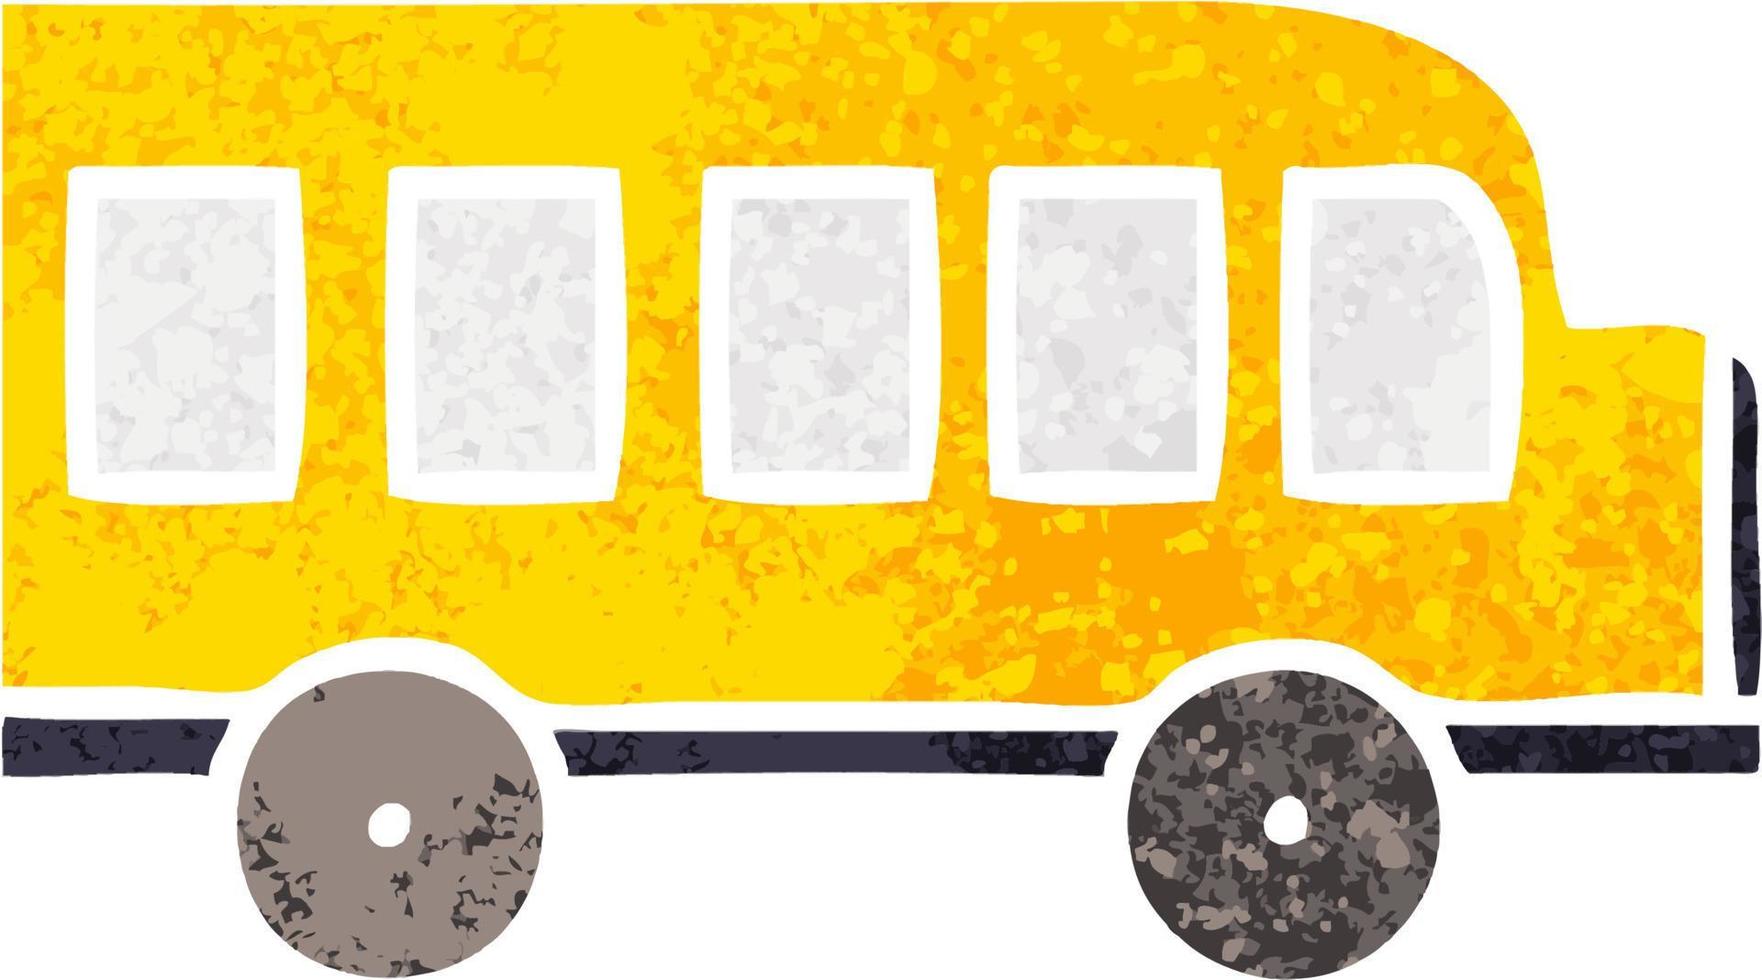 autobus scolaire de dessin animé de style illustration rétro vecteur